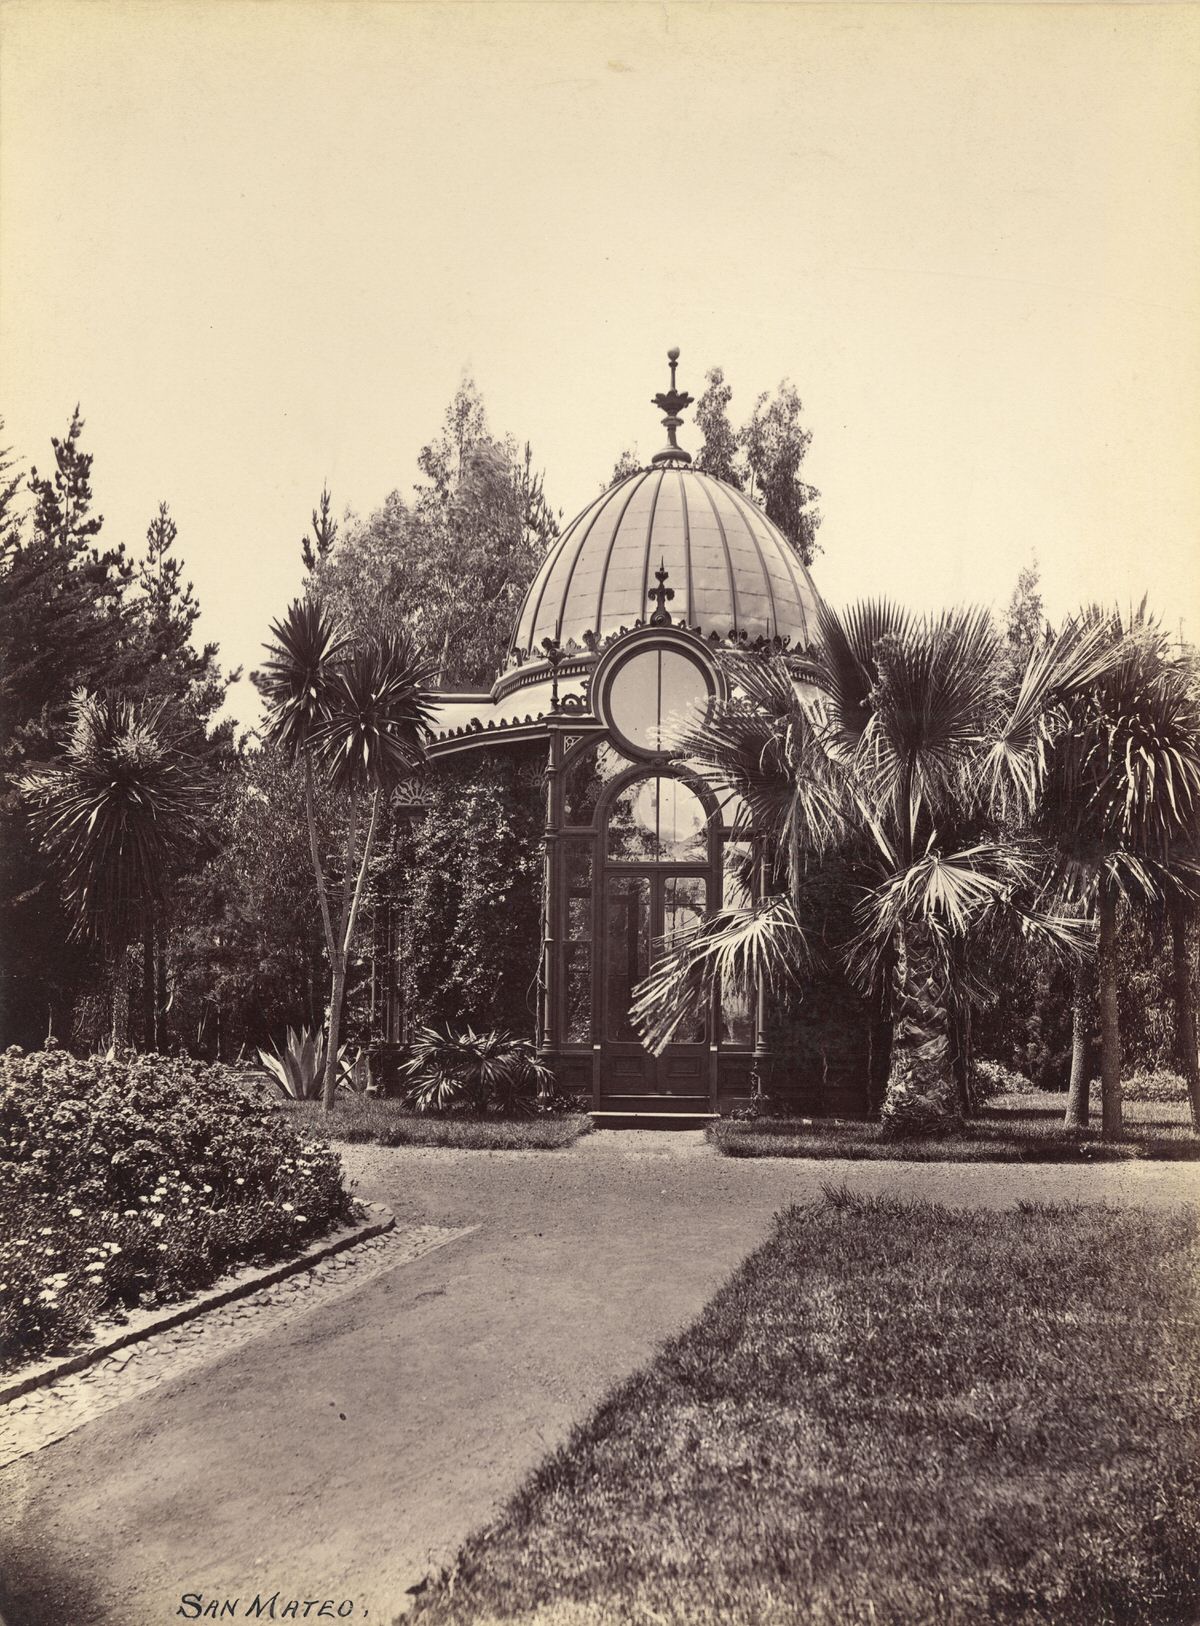 San Mateo between, 1880